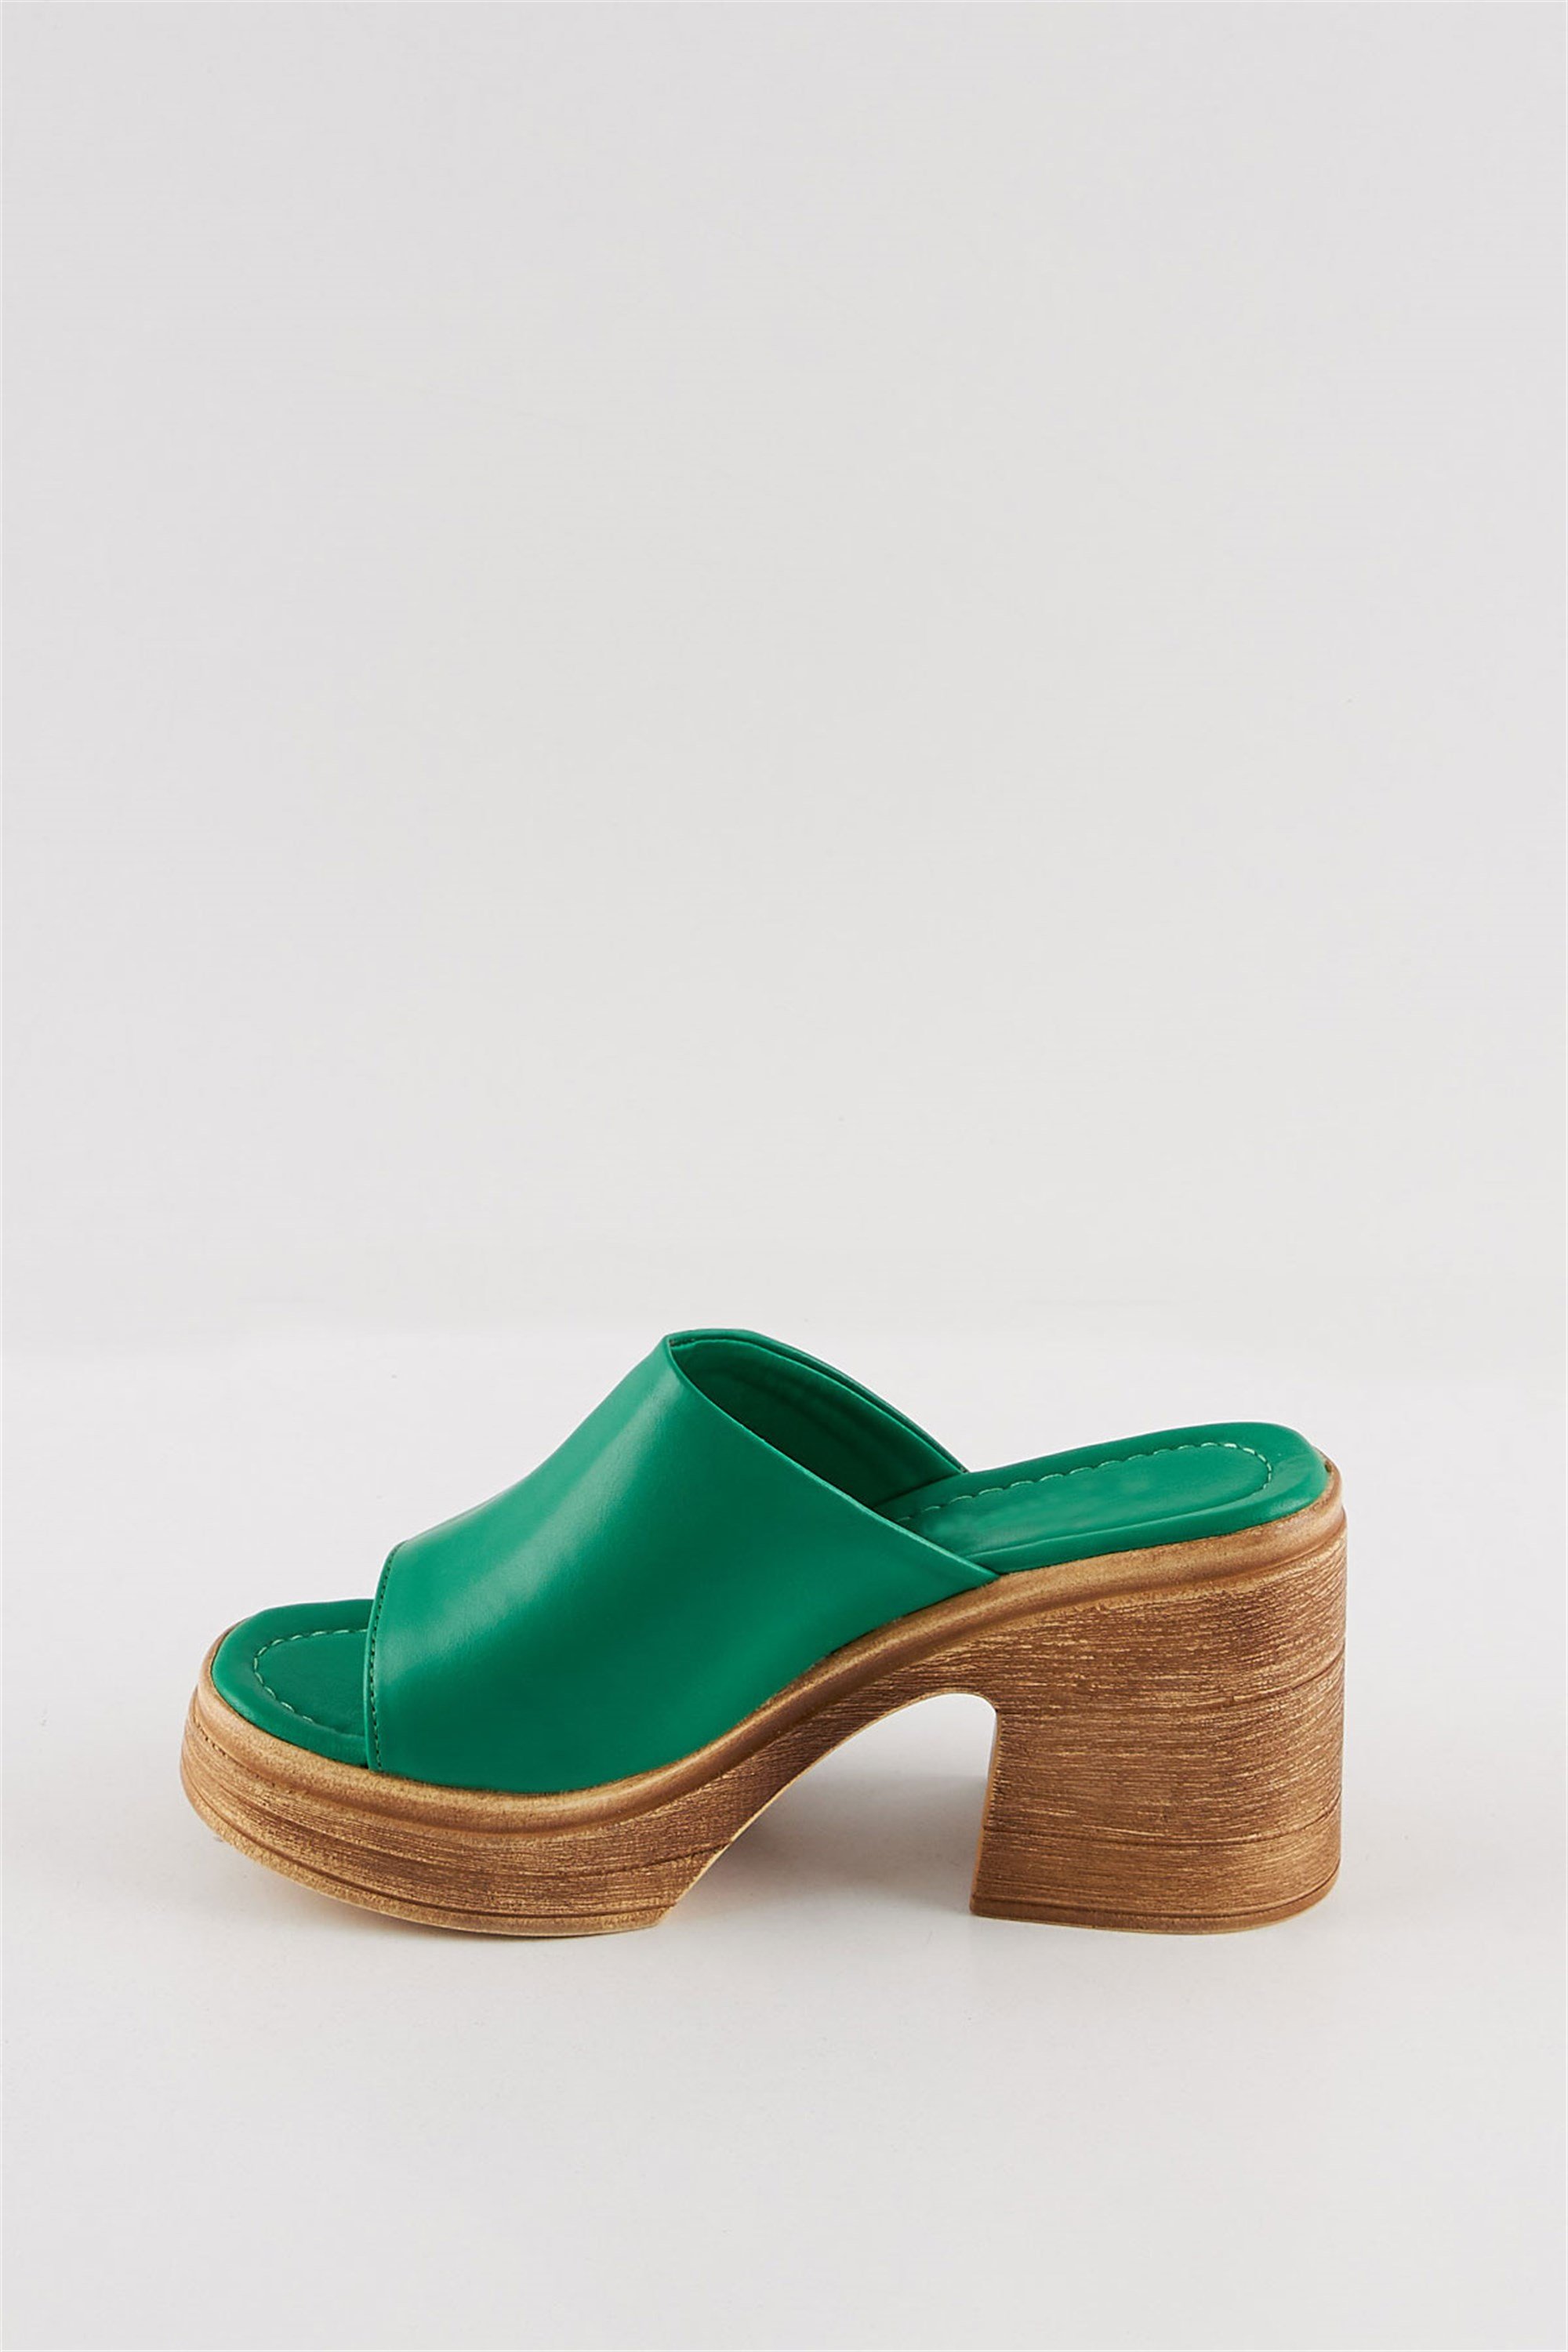 Cimus Yeşil Deri Burnu Açık Yazlık Rahat Topuklu Kadın Sandalet Terlik